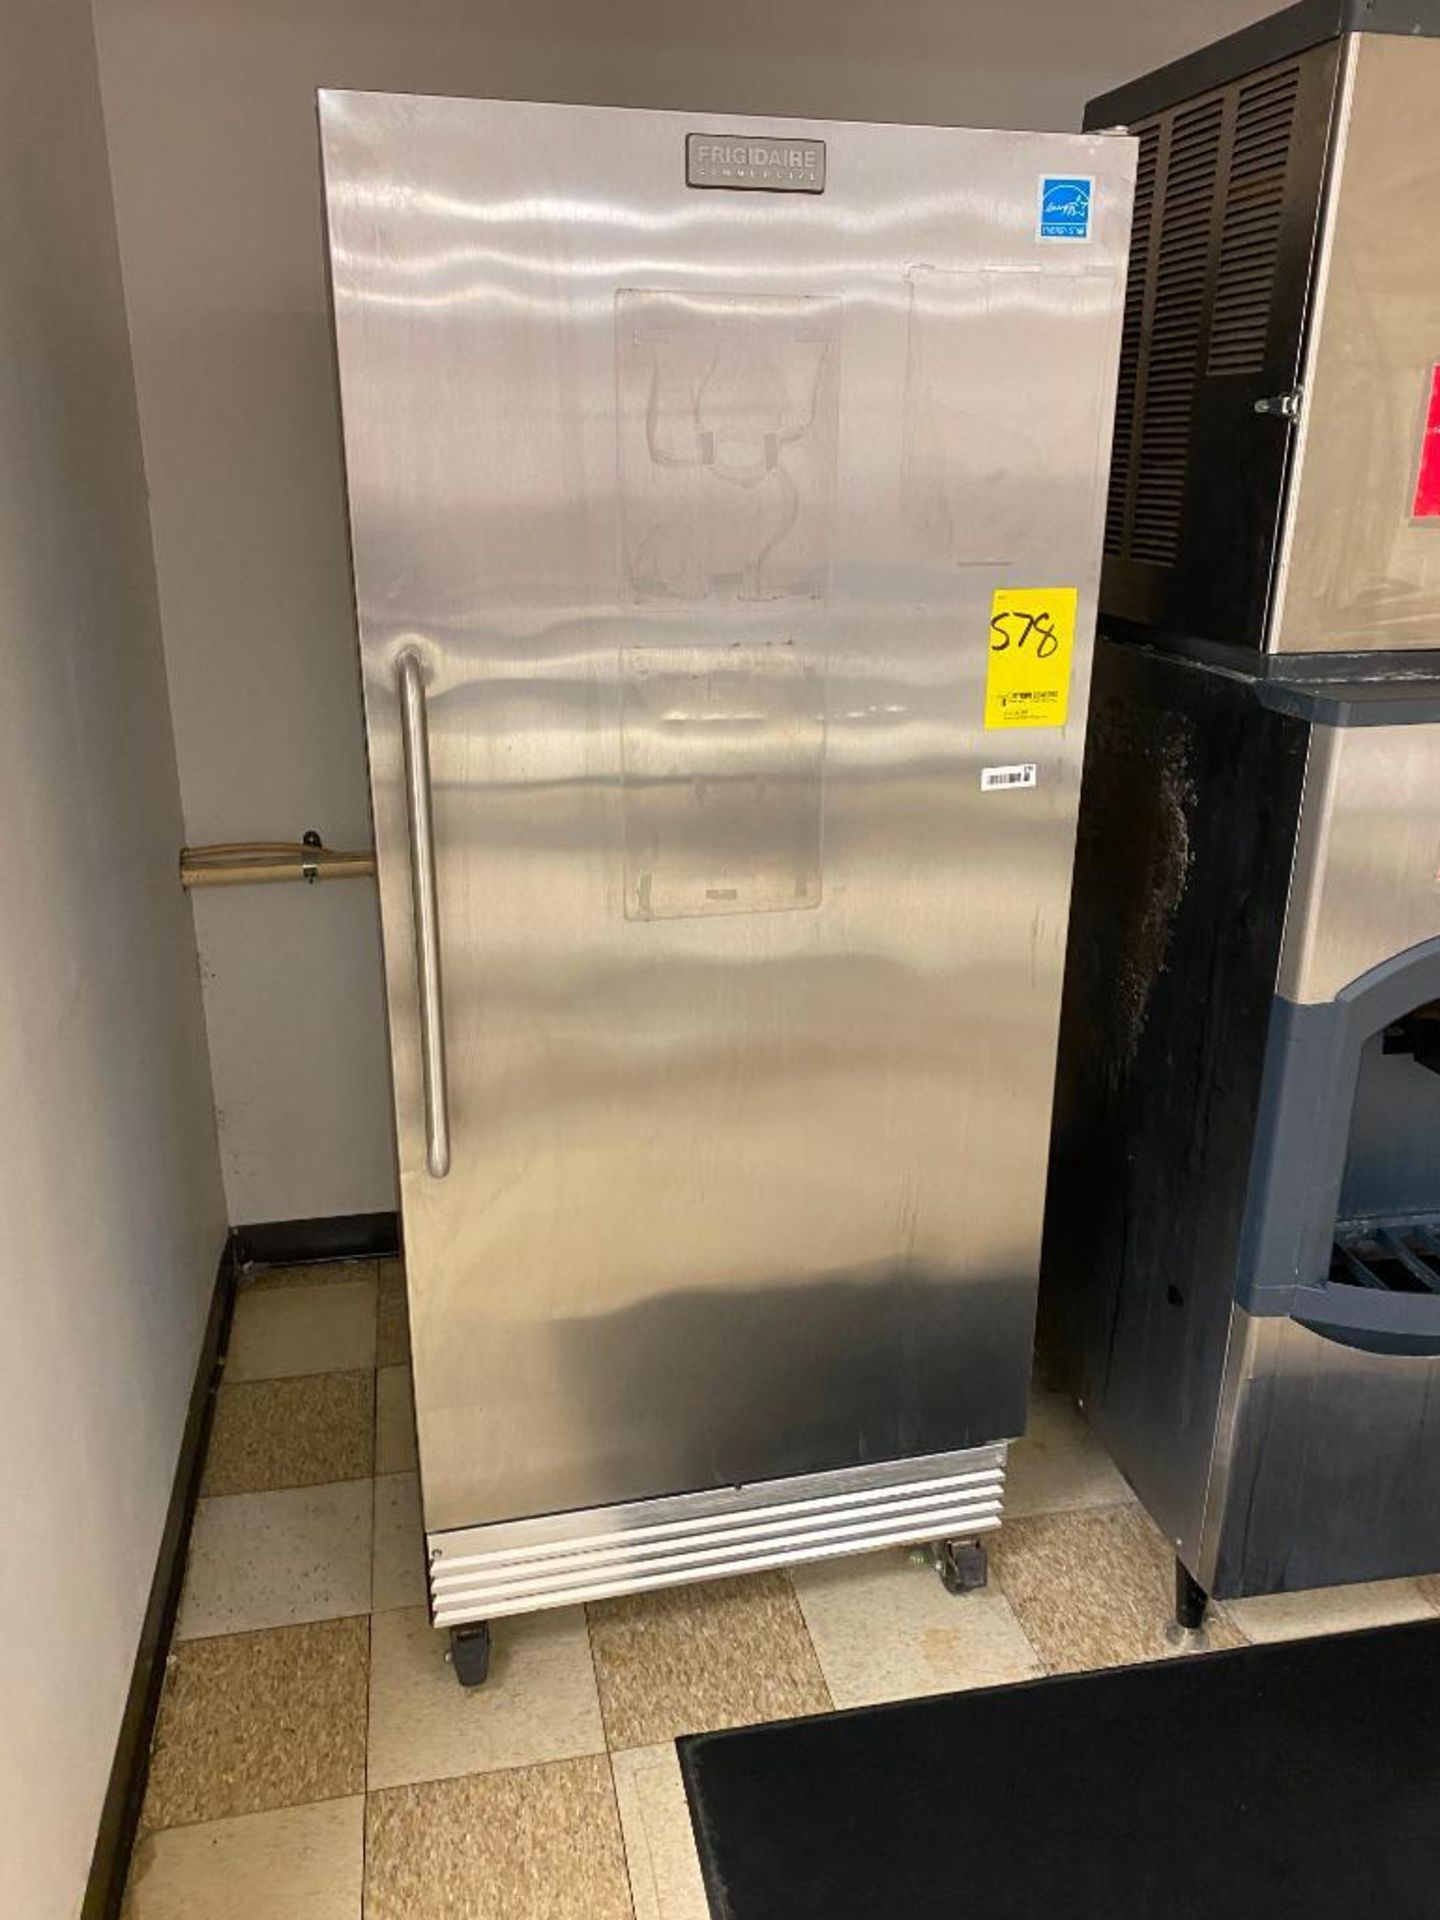 Frigidaire Commercial Refrigerator